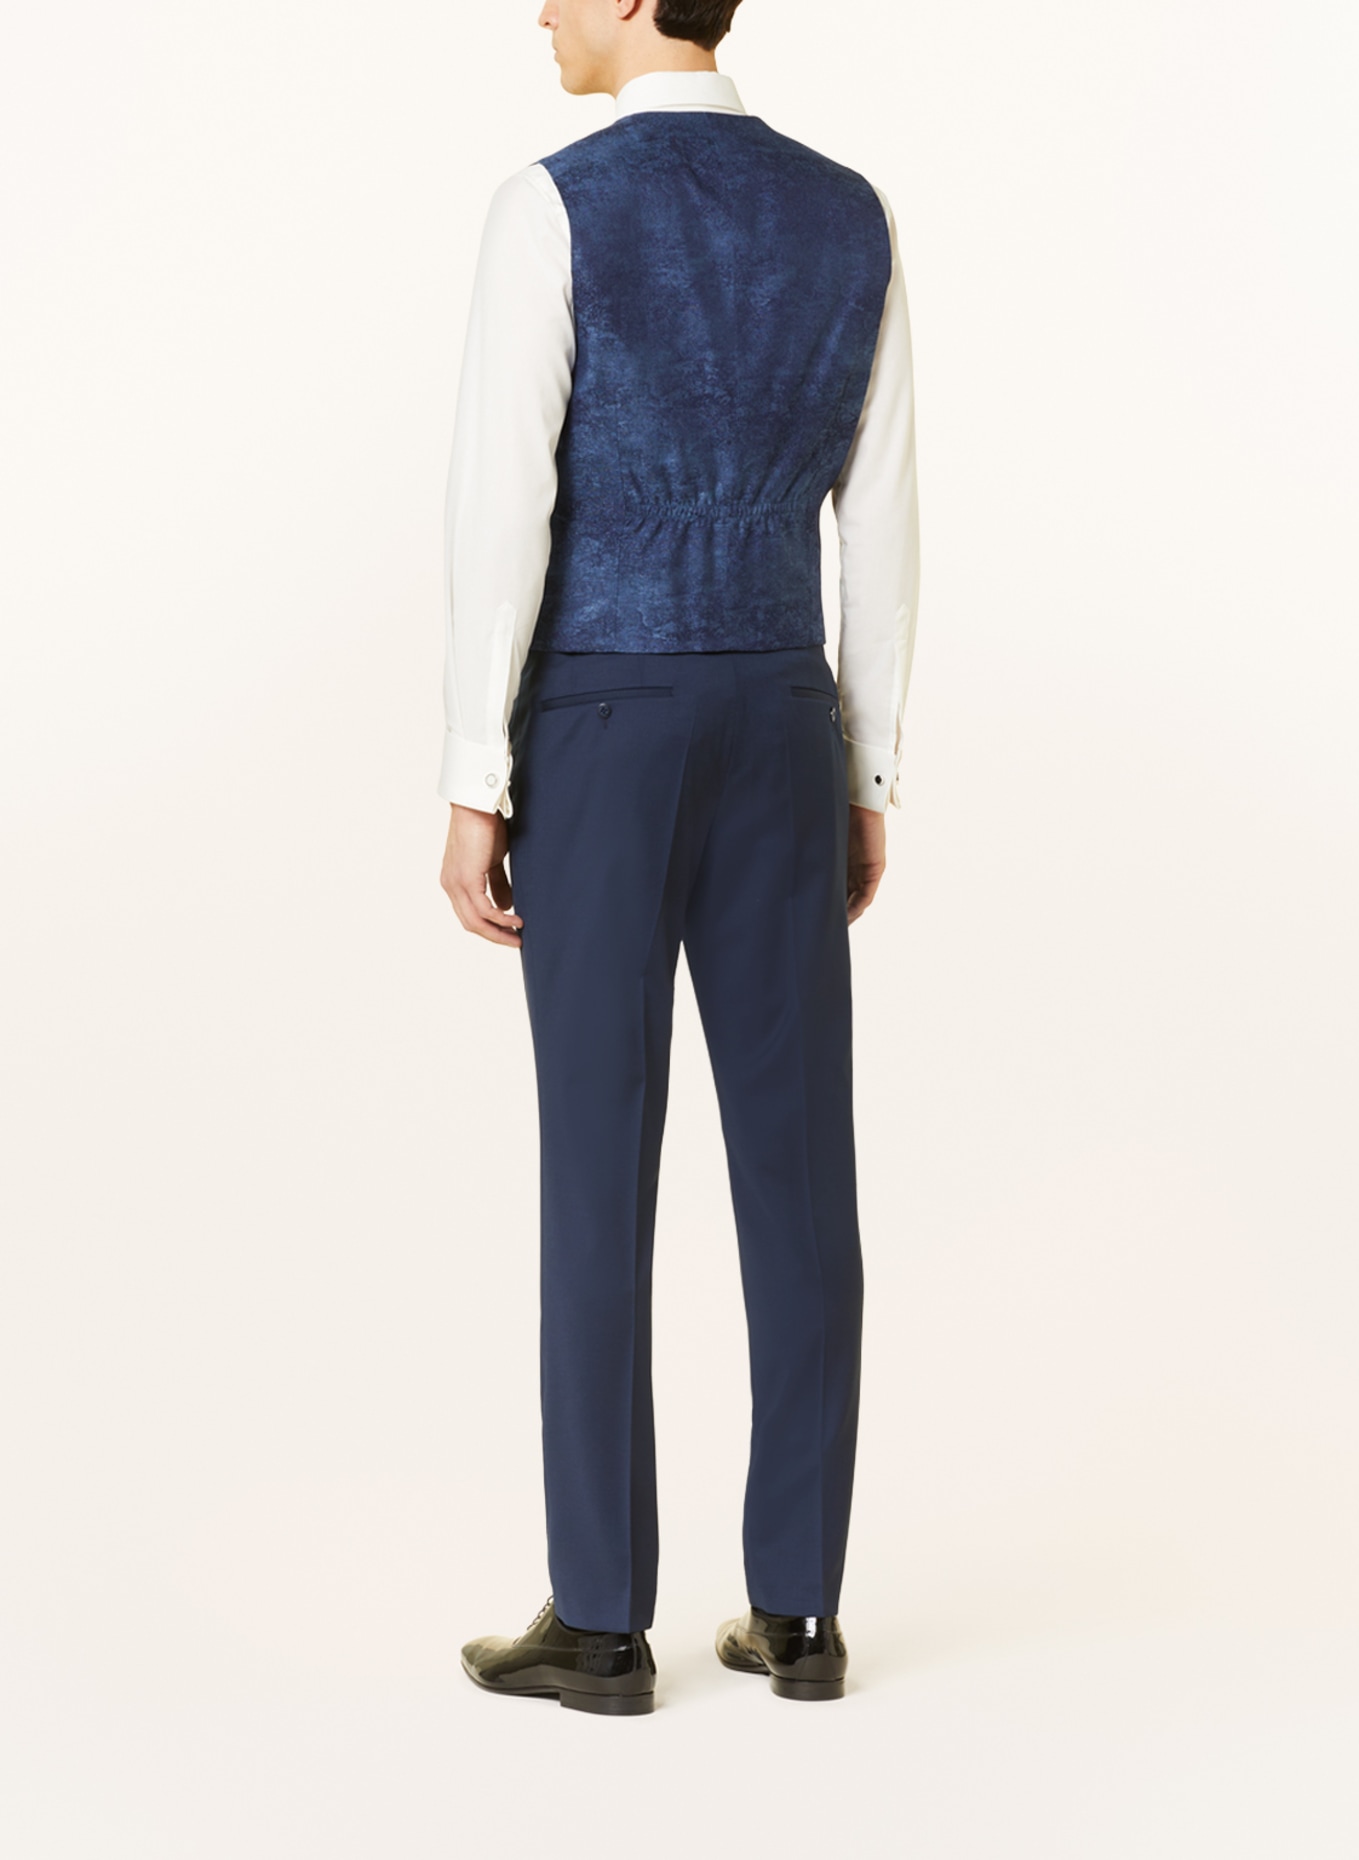 WILVORST Suit vest extra slim fit, Color: DARK BLUE (Image 3)